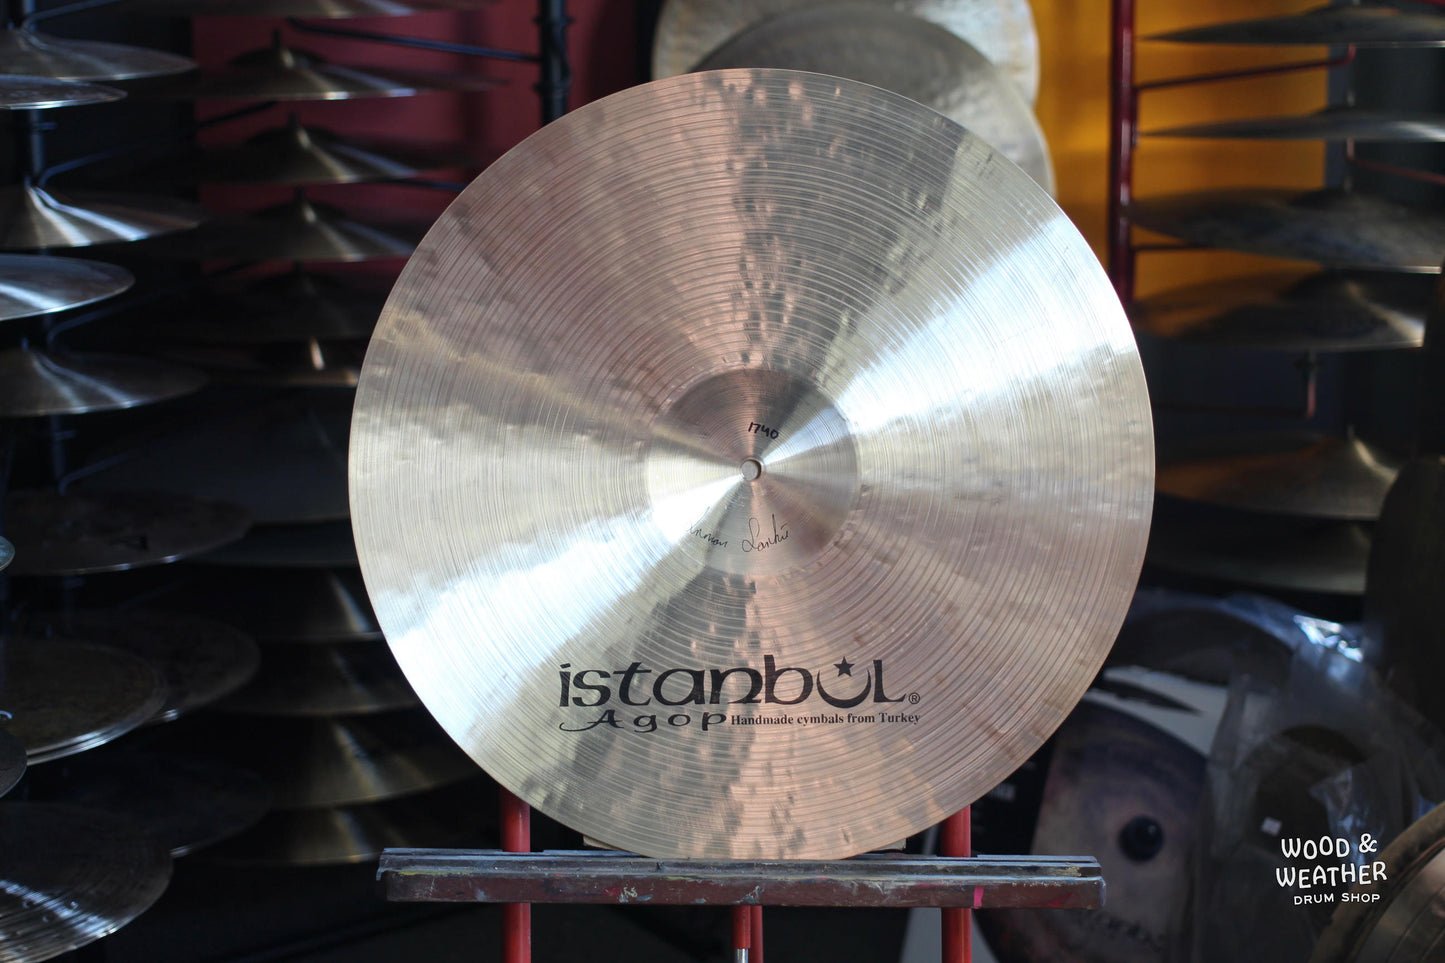 Istanbul Agop 20" Traditional Dark Crash Cymbal 1740g